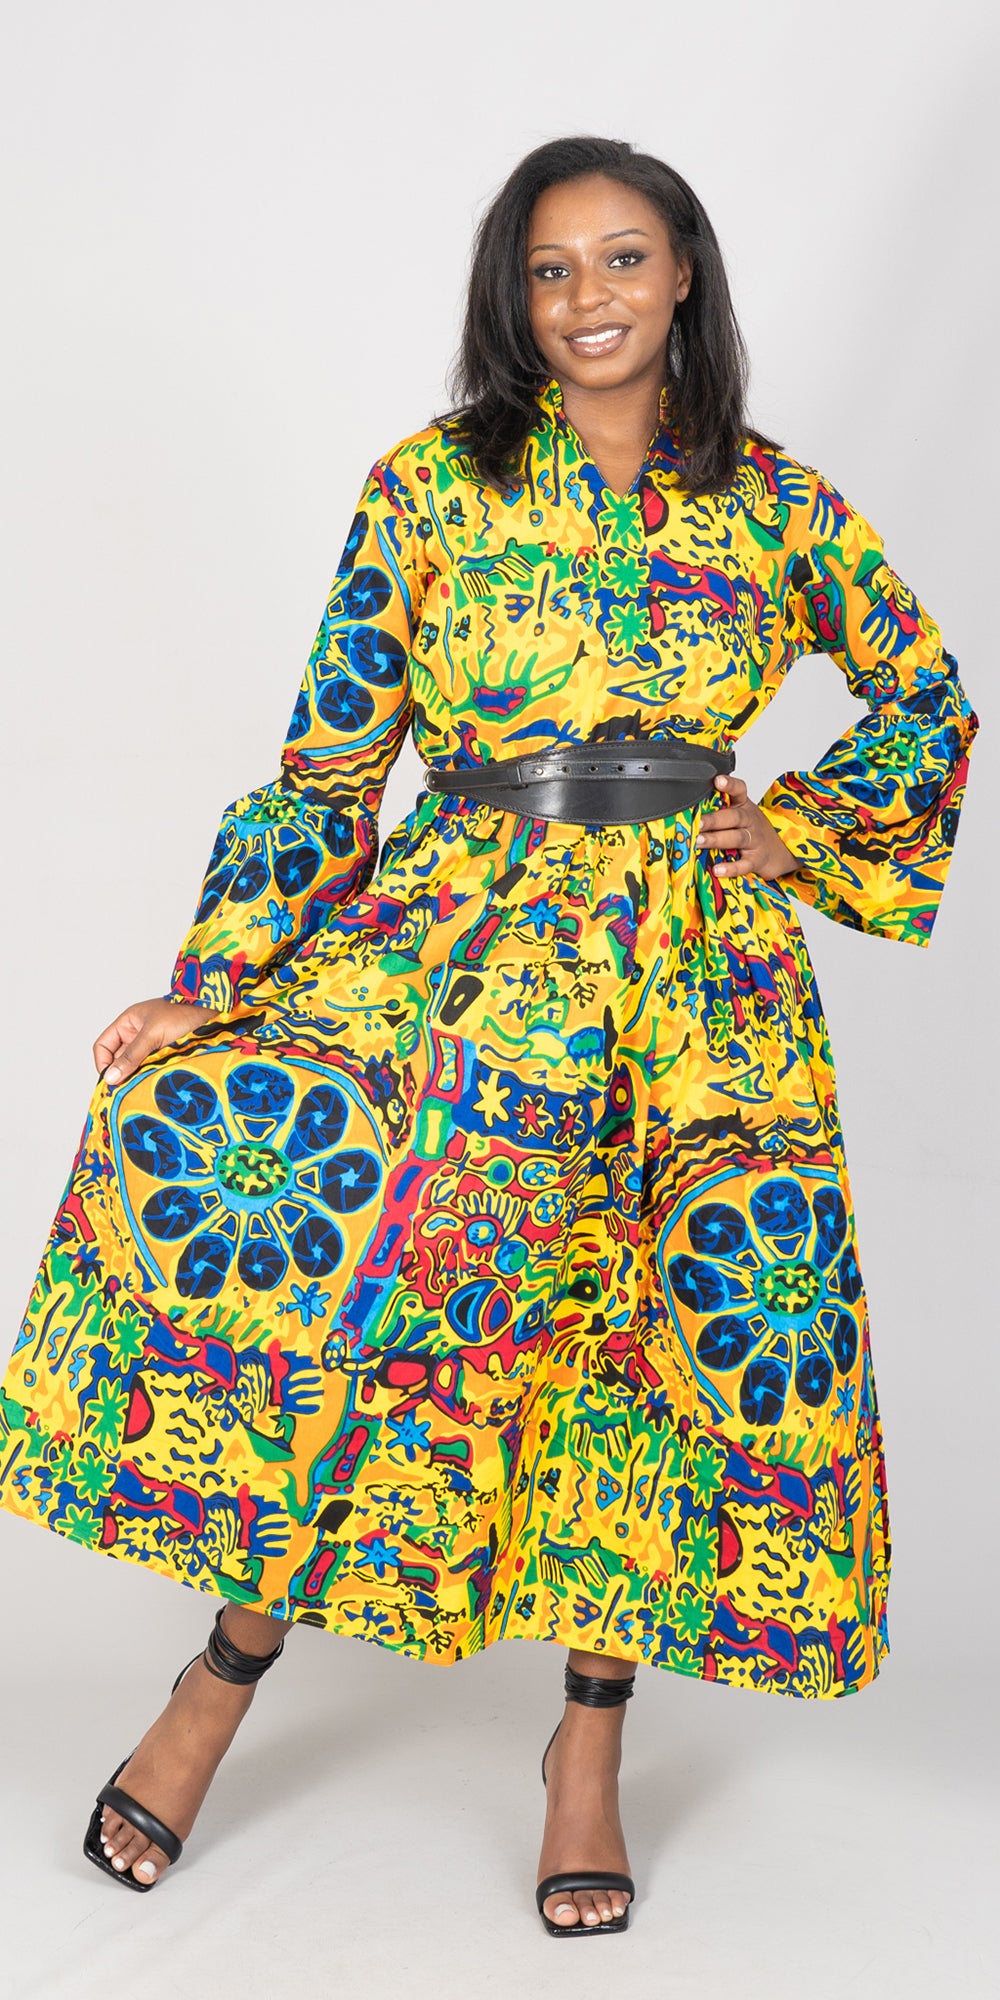 KaraChic 7784-590 - African Print Maxi Dress